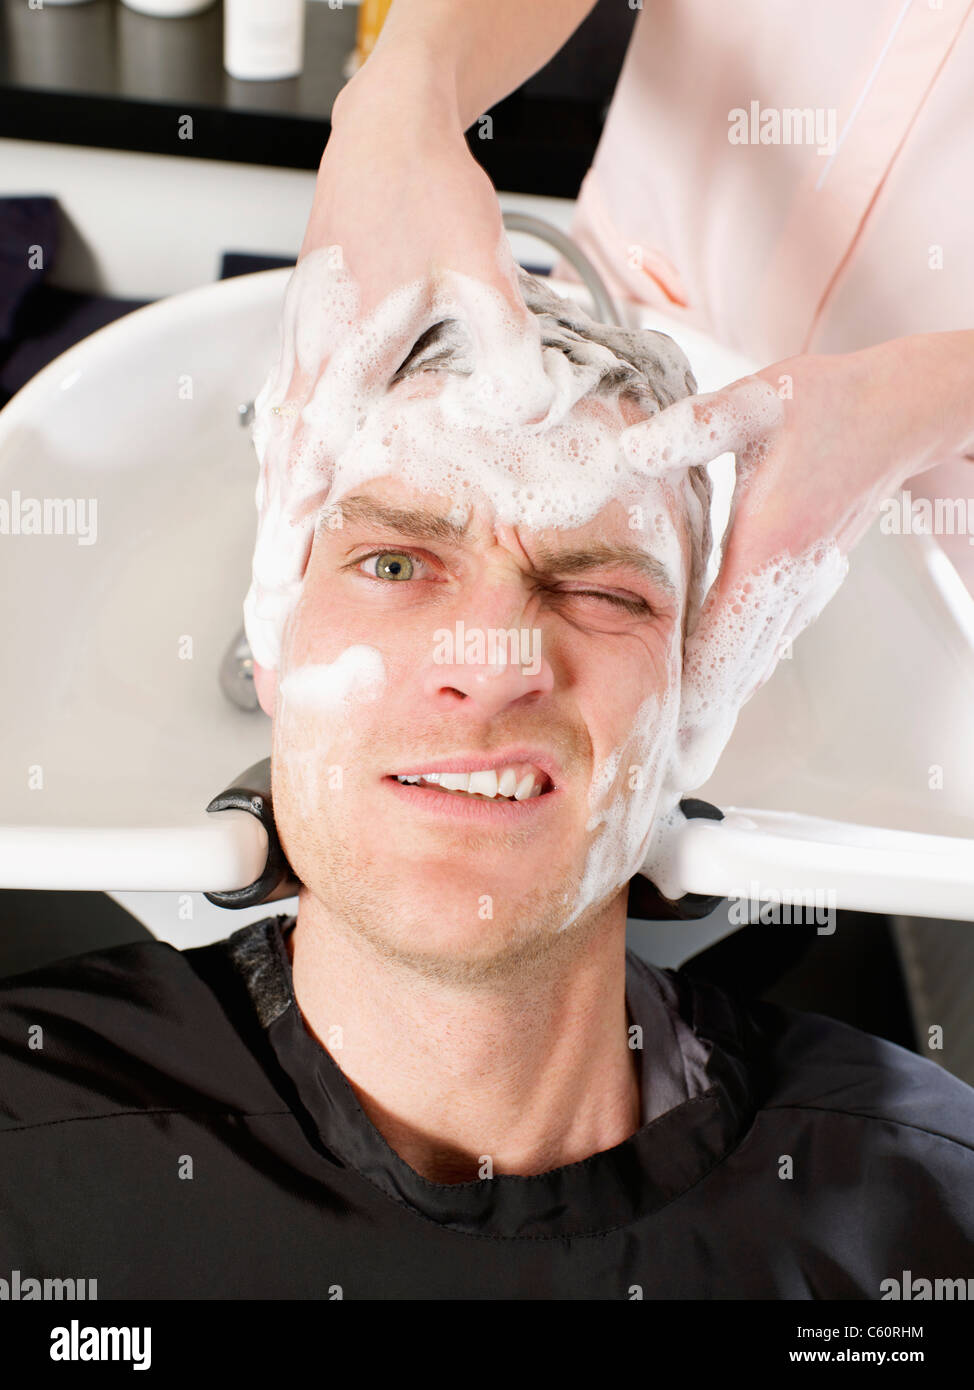 Мужчина моет волосы. Мытье головы мужское. Мужчина моет голову. Мужчина моет волосы в салоне. Мытье волос мужчина.